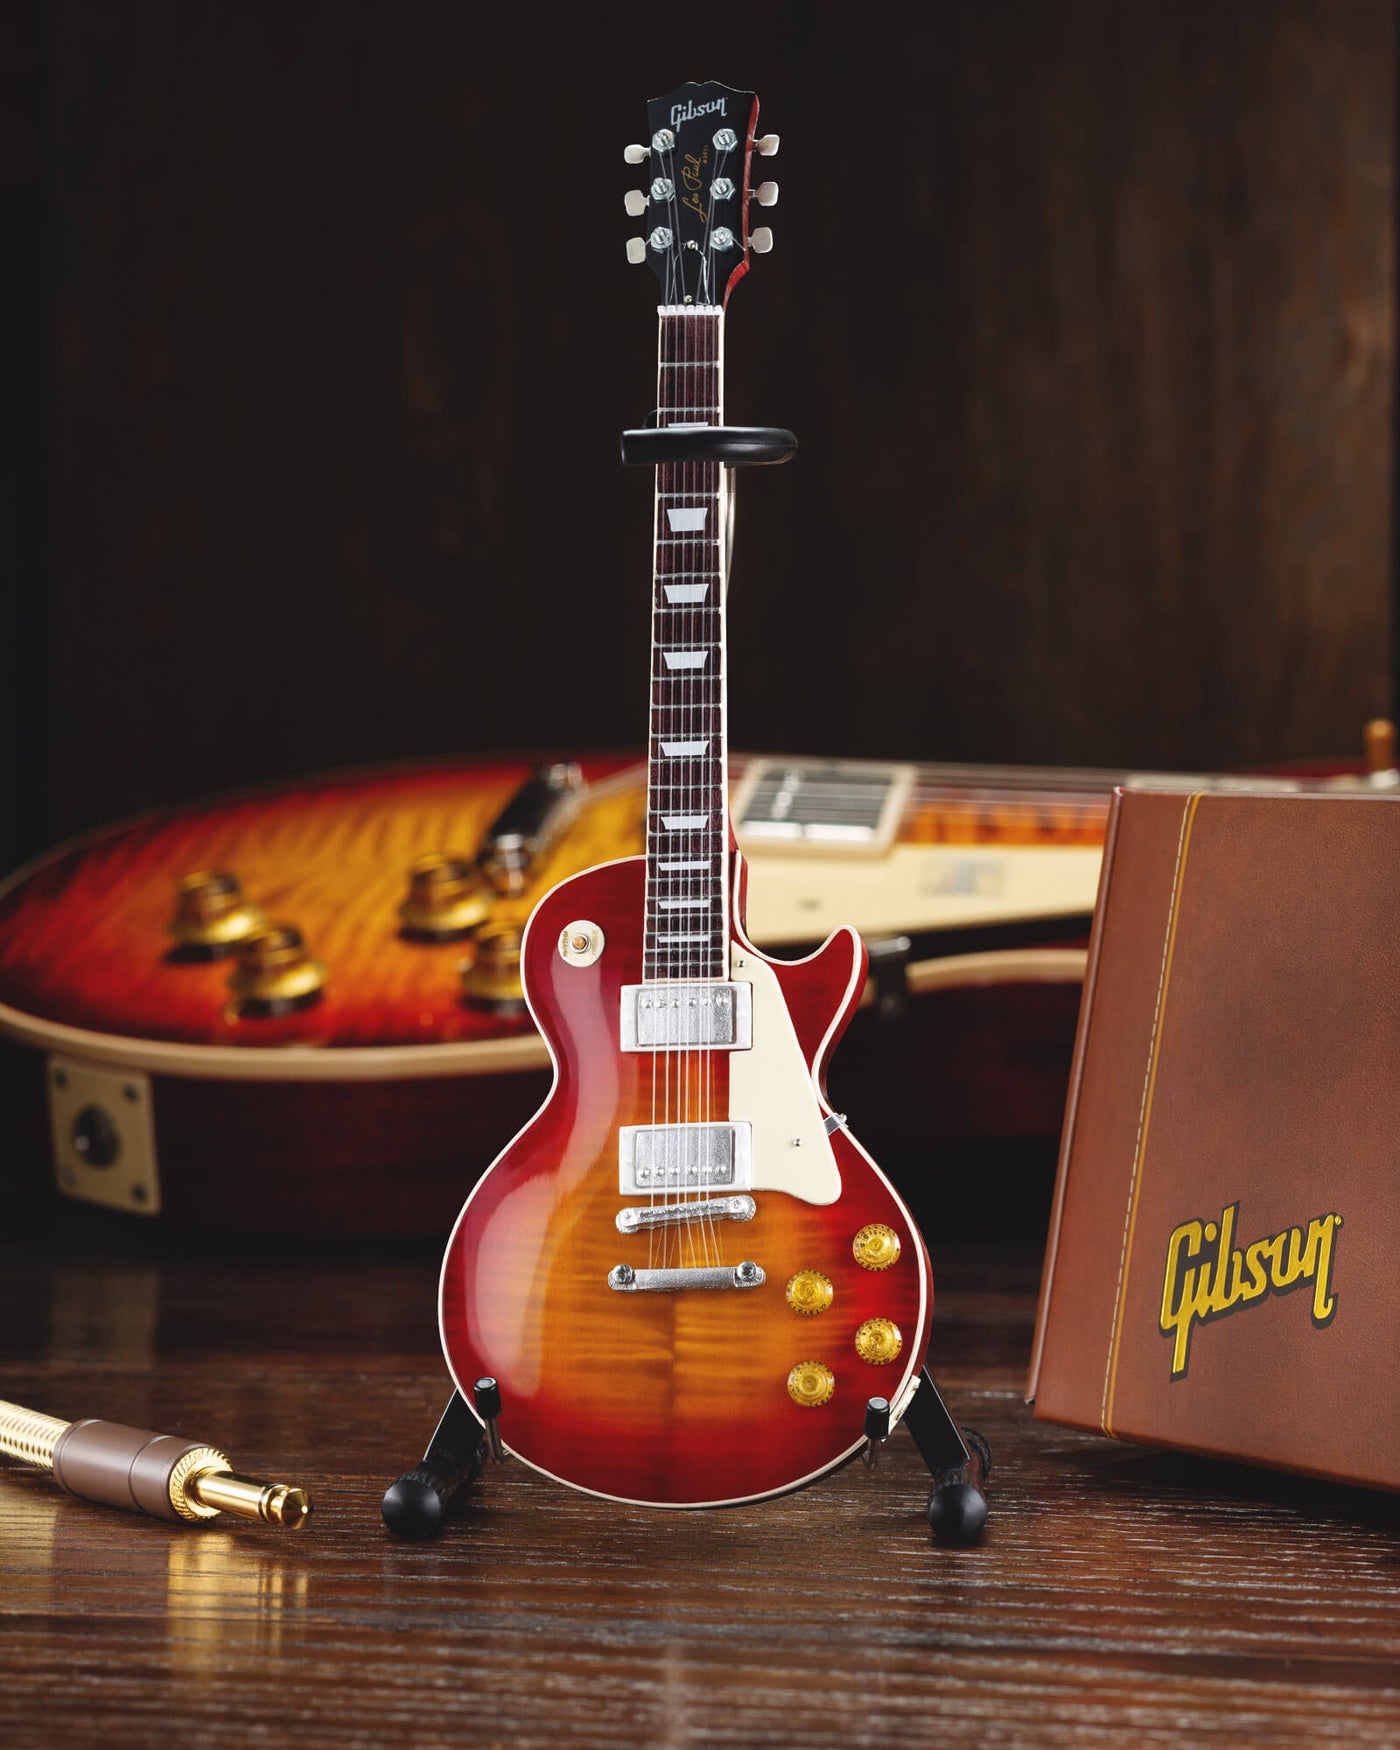 Daniel Steiger Gibson 1959 Les Paul Standard Cherry Sunburst Guitar Model